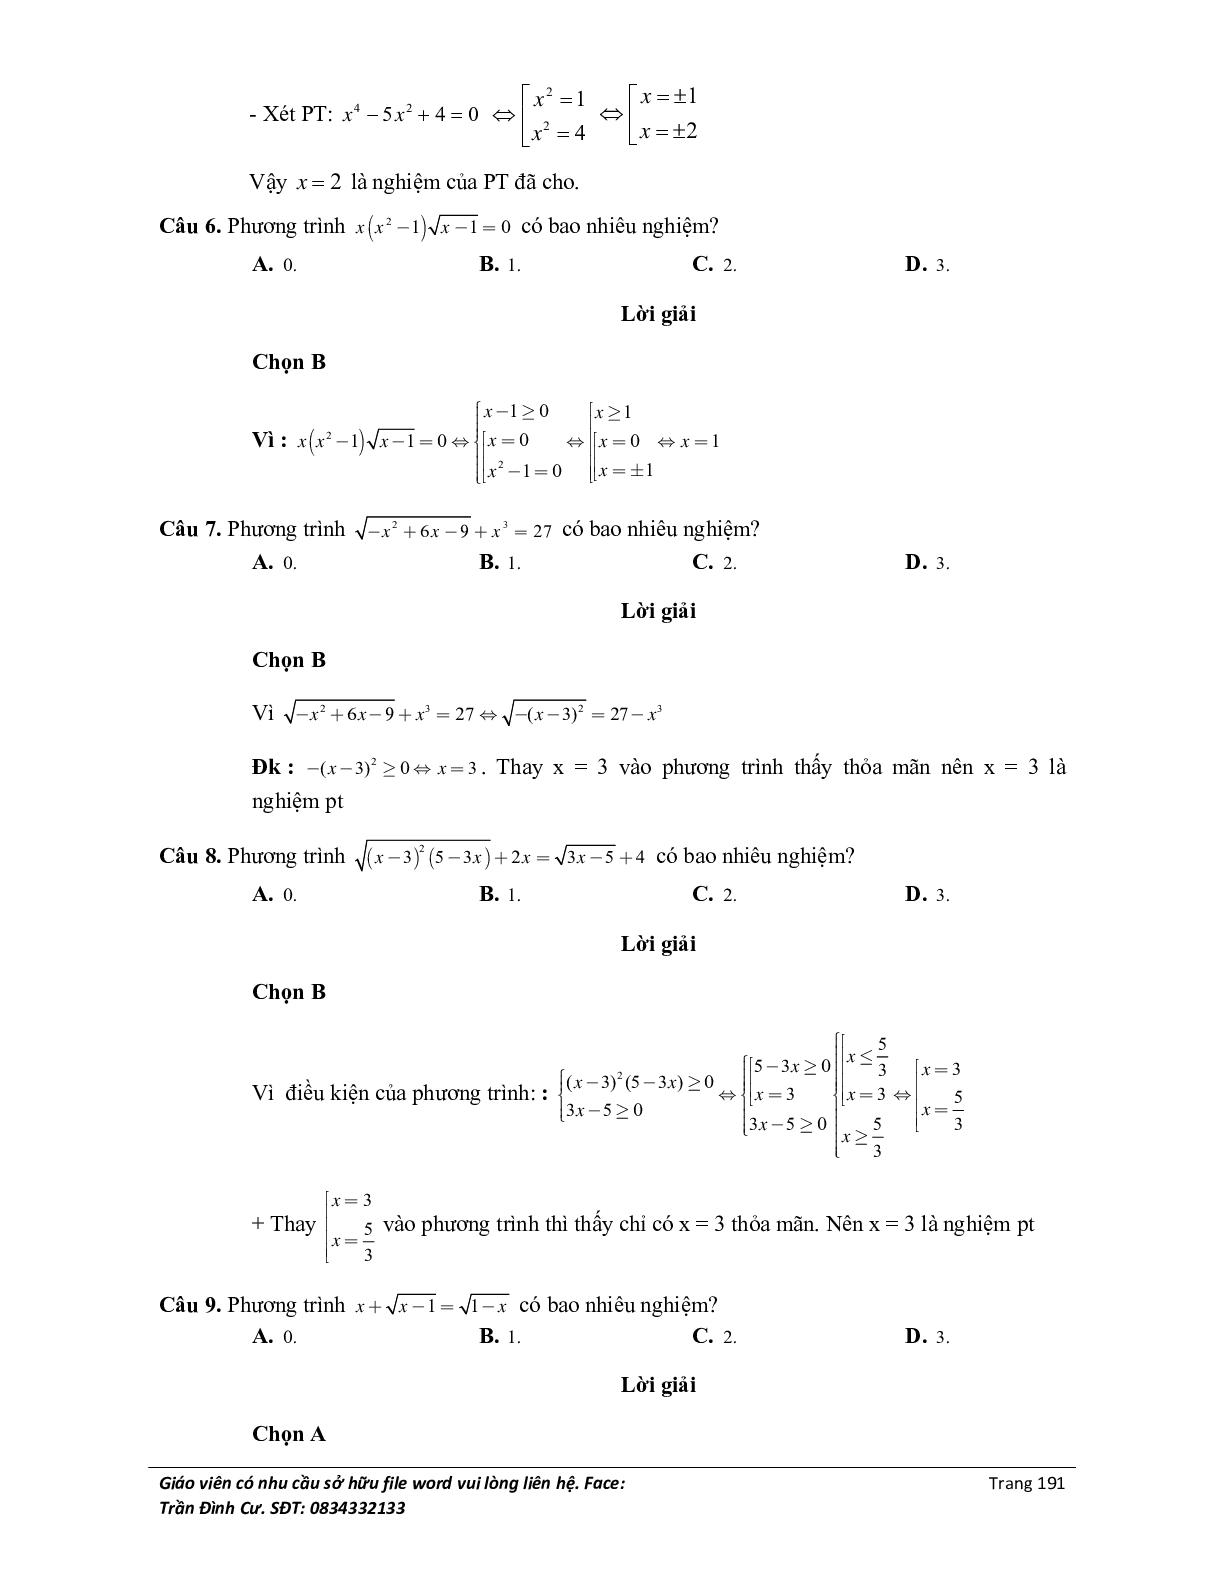 Đại cương về phương trình môn Toán lớp 10 (trang 9)